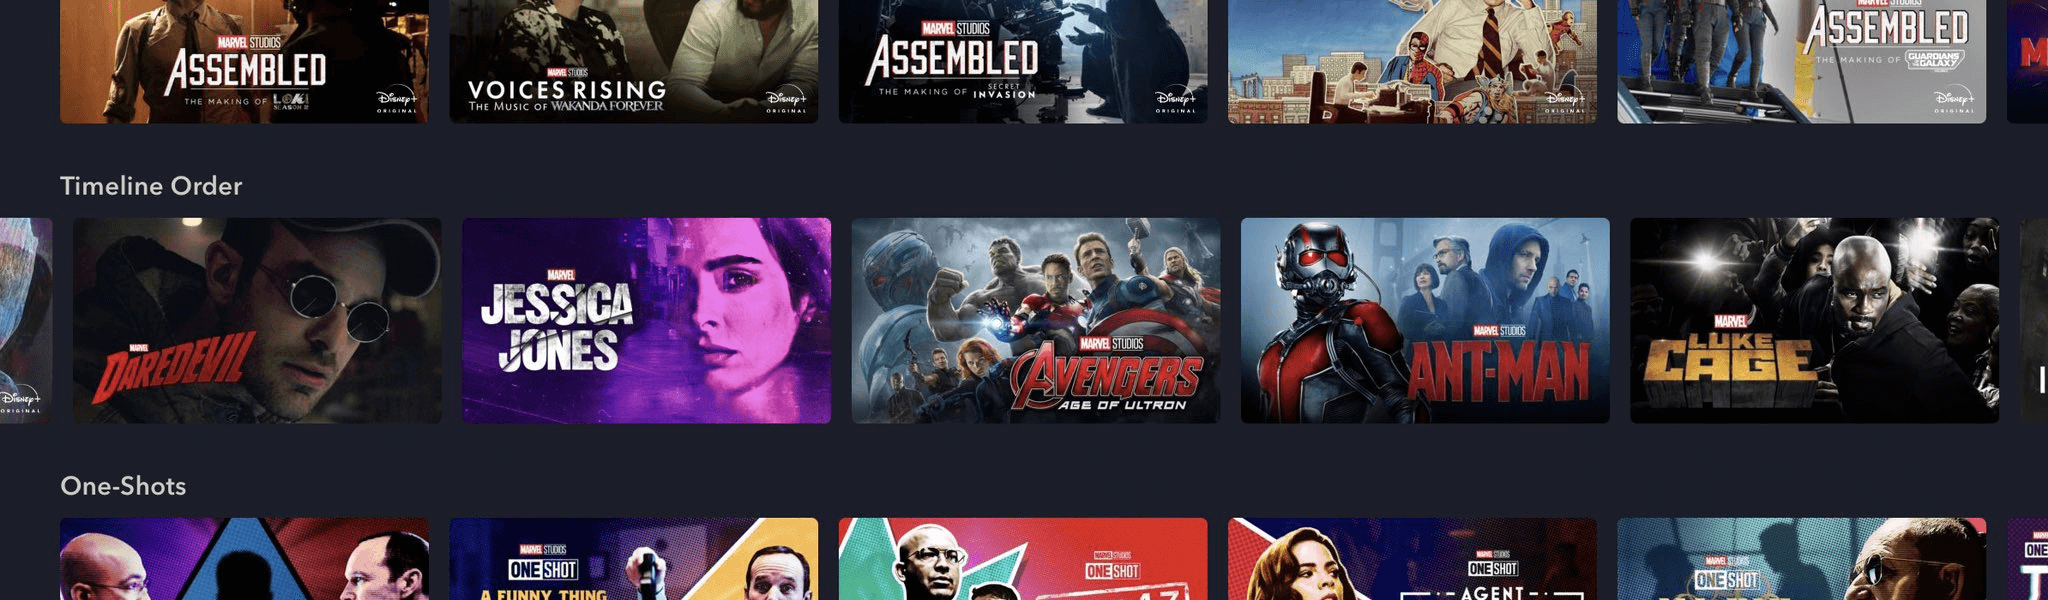 Marvel oficializa séries da Netflix como parte do MCU 